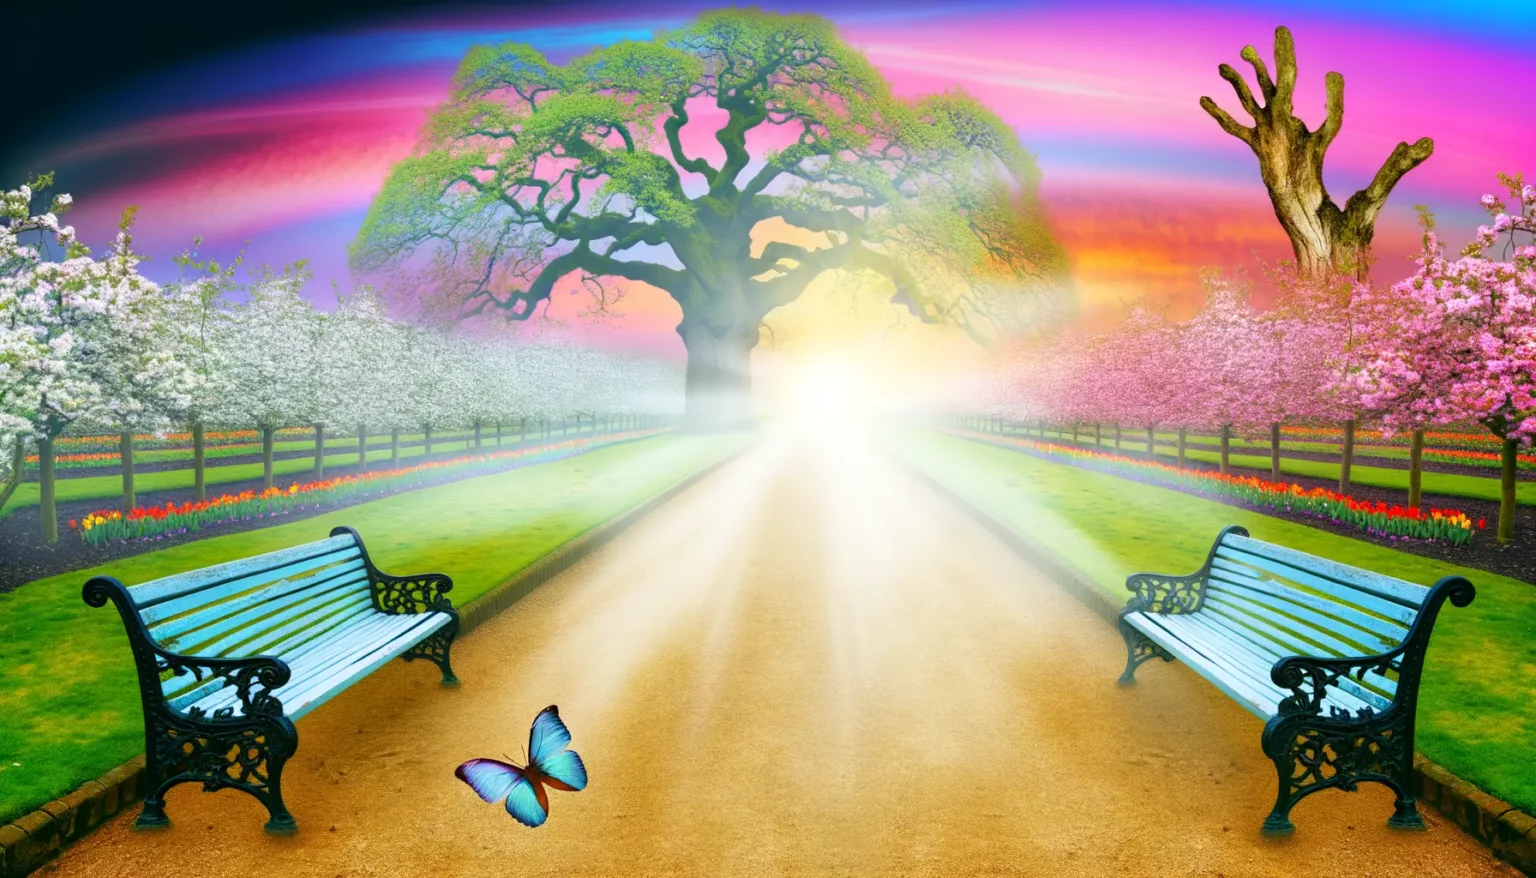 Eine surreale Szenerie eines leuchtenden, von Bäumen gesäumten Weges mit zwei Parkbänken und einem Schmetterling im Vordergrund, unter einem himmlischen, farbenprächtigen Himmel. Im Hintergrund strahlt die Sonne am Horizont und taucht die Umgebung in ein helles Licht.